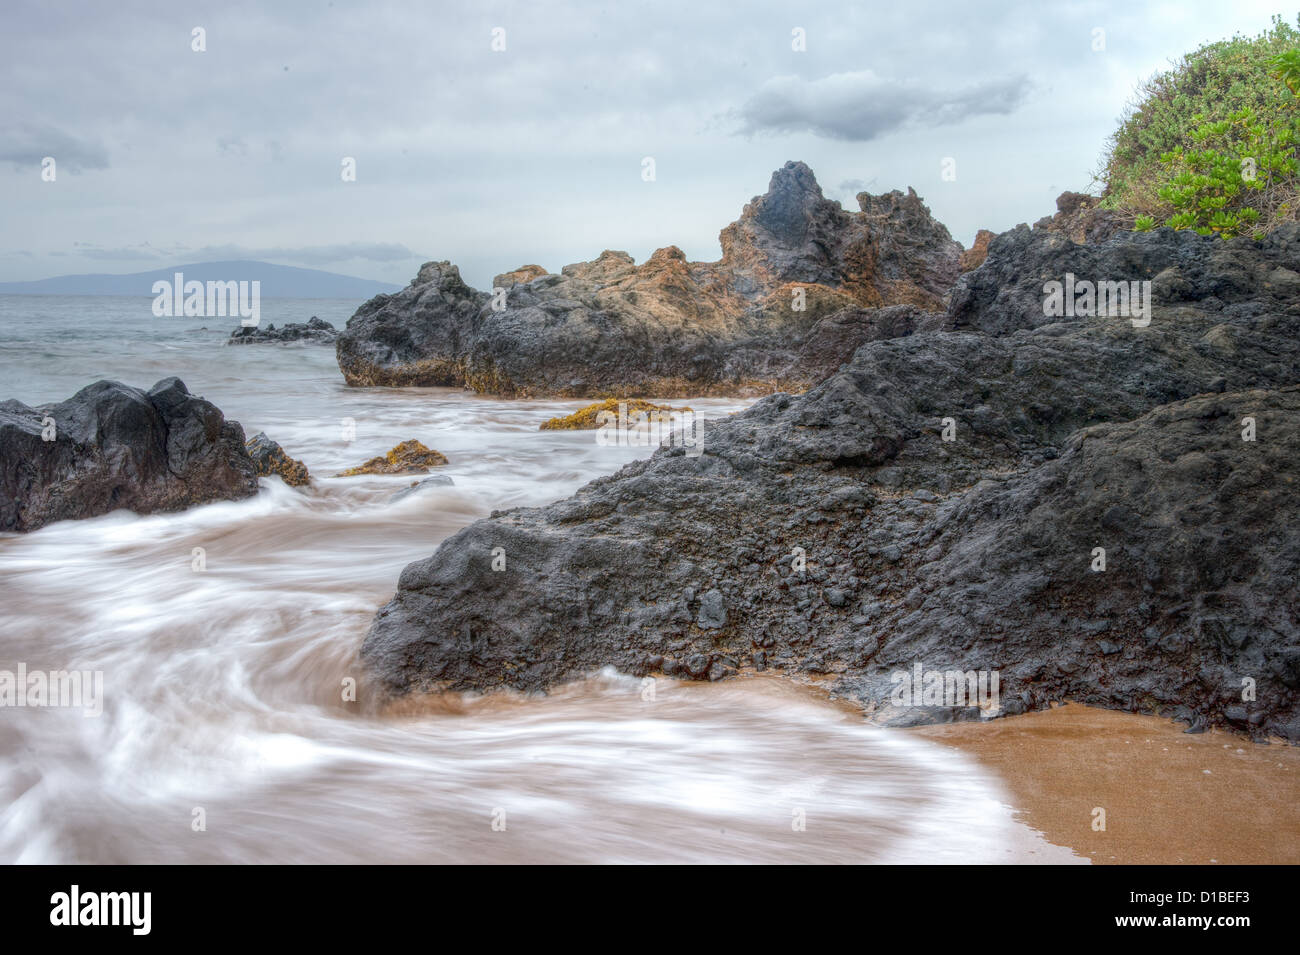 Maui roccioso litorale con lenta onde in movimento Foto Stock